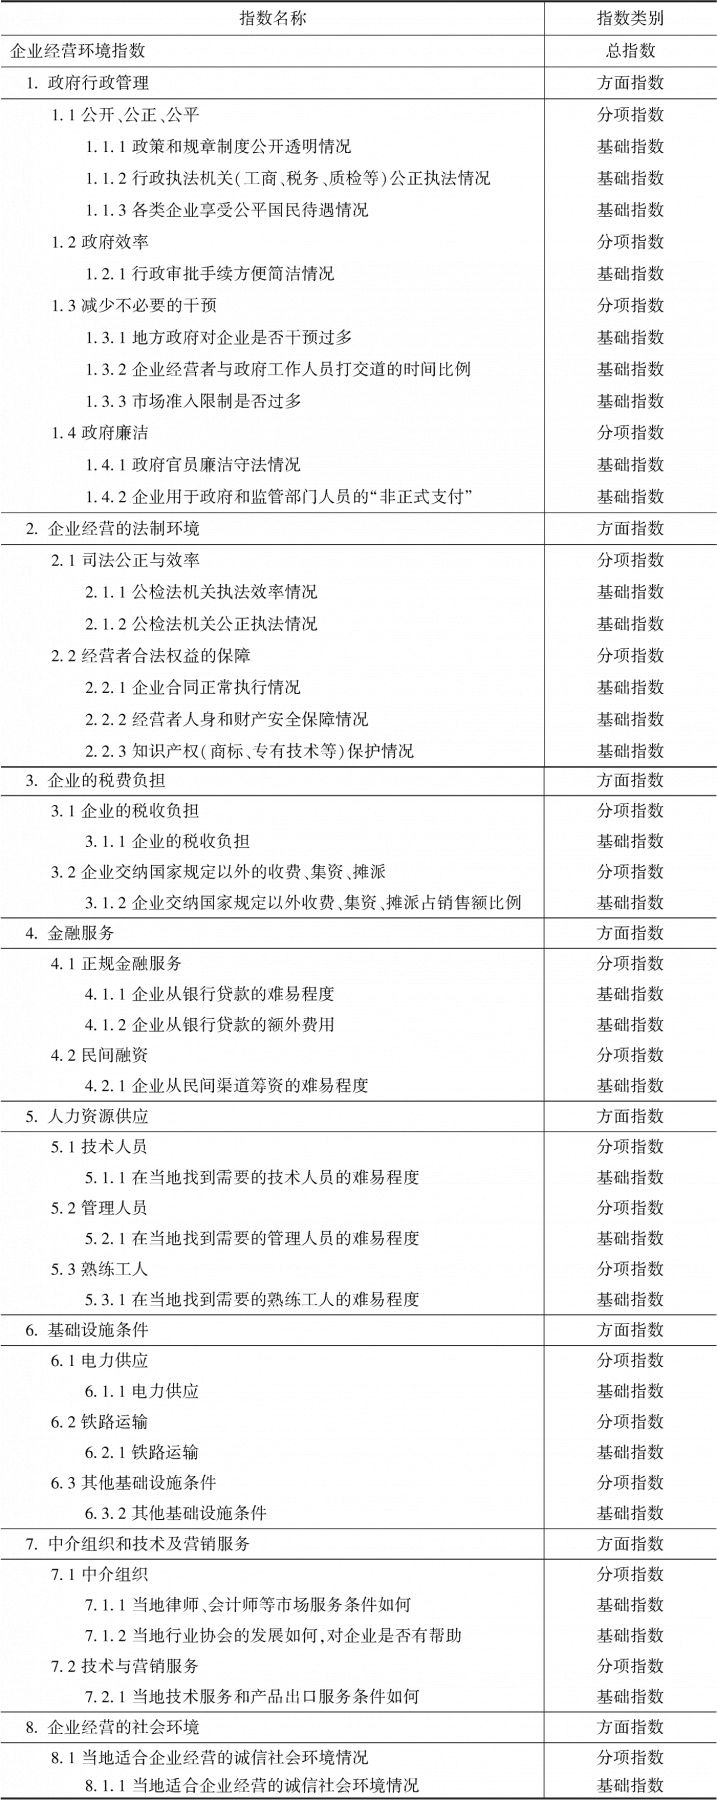 表6-2 企业经营环境指数构成（2012年）